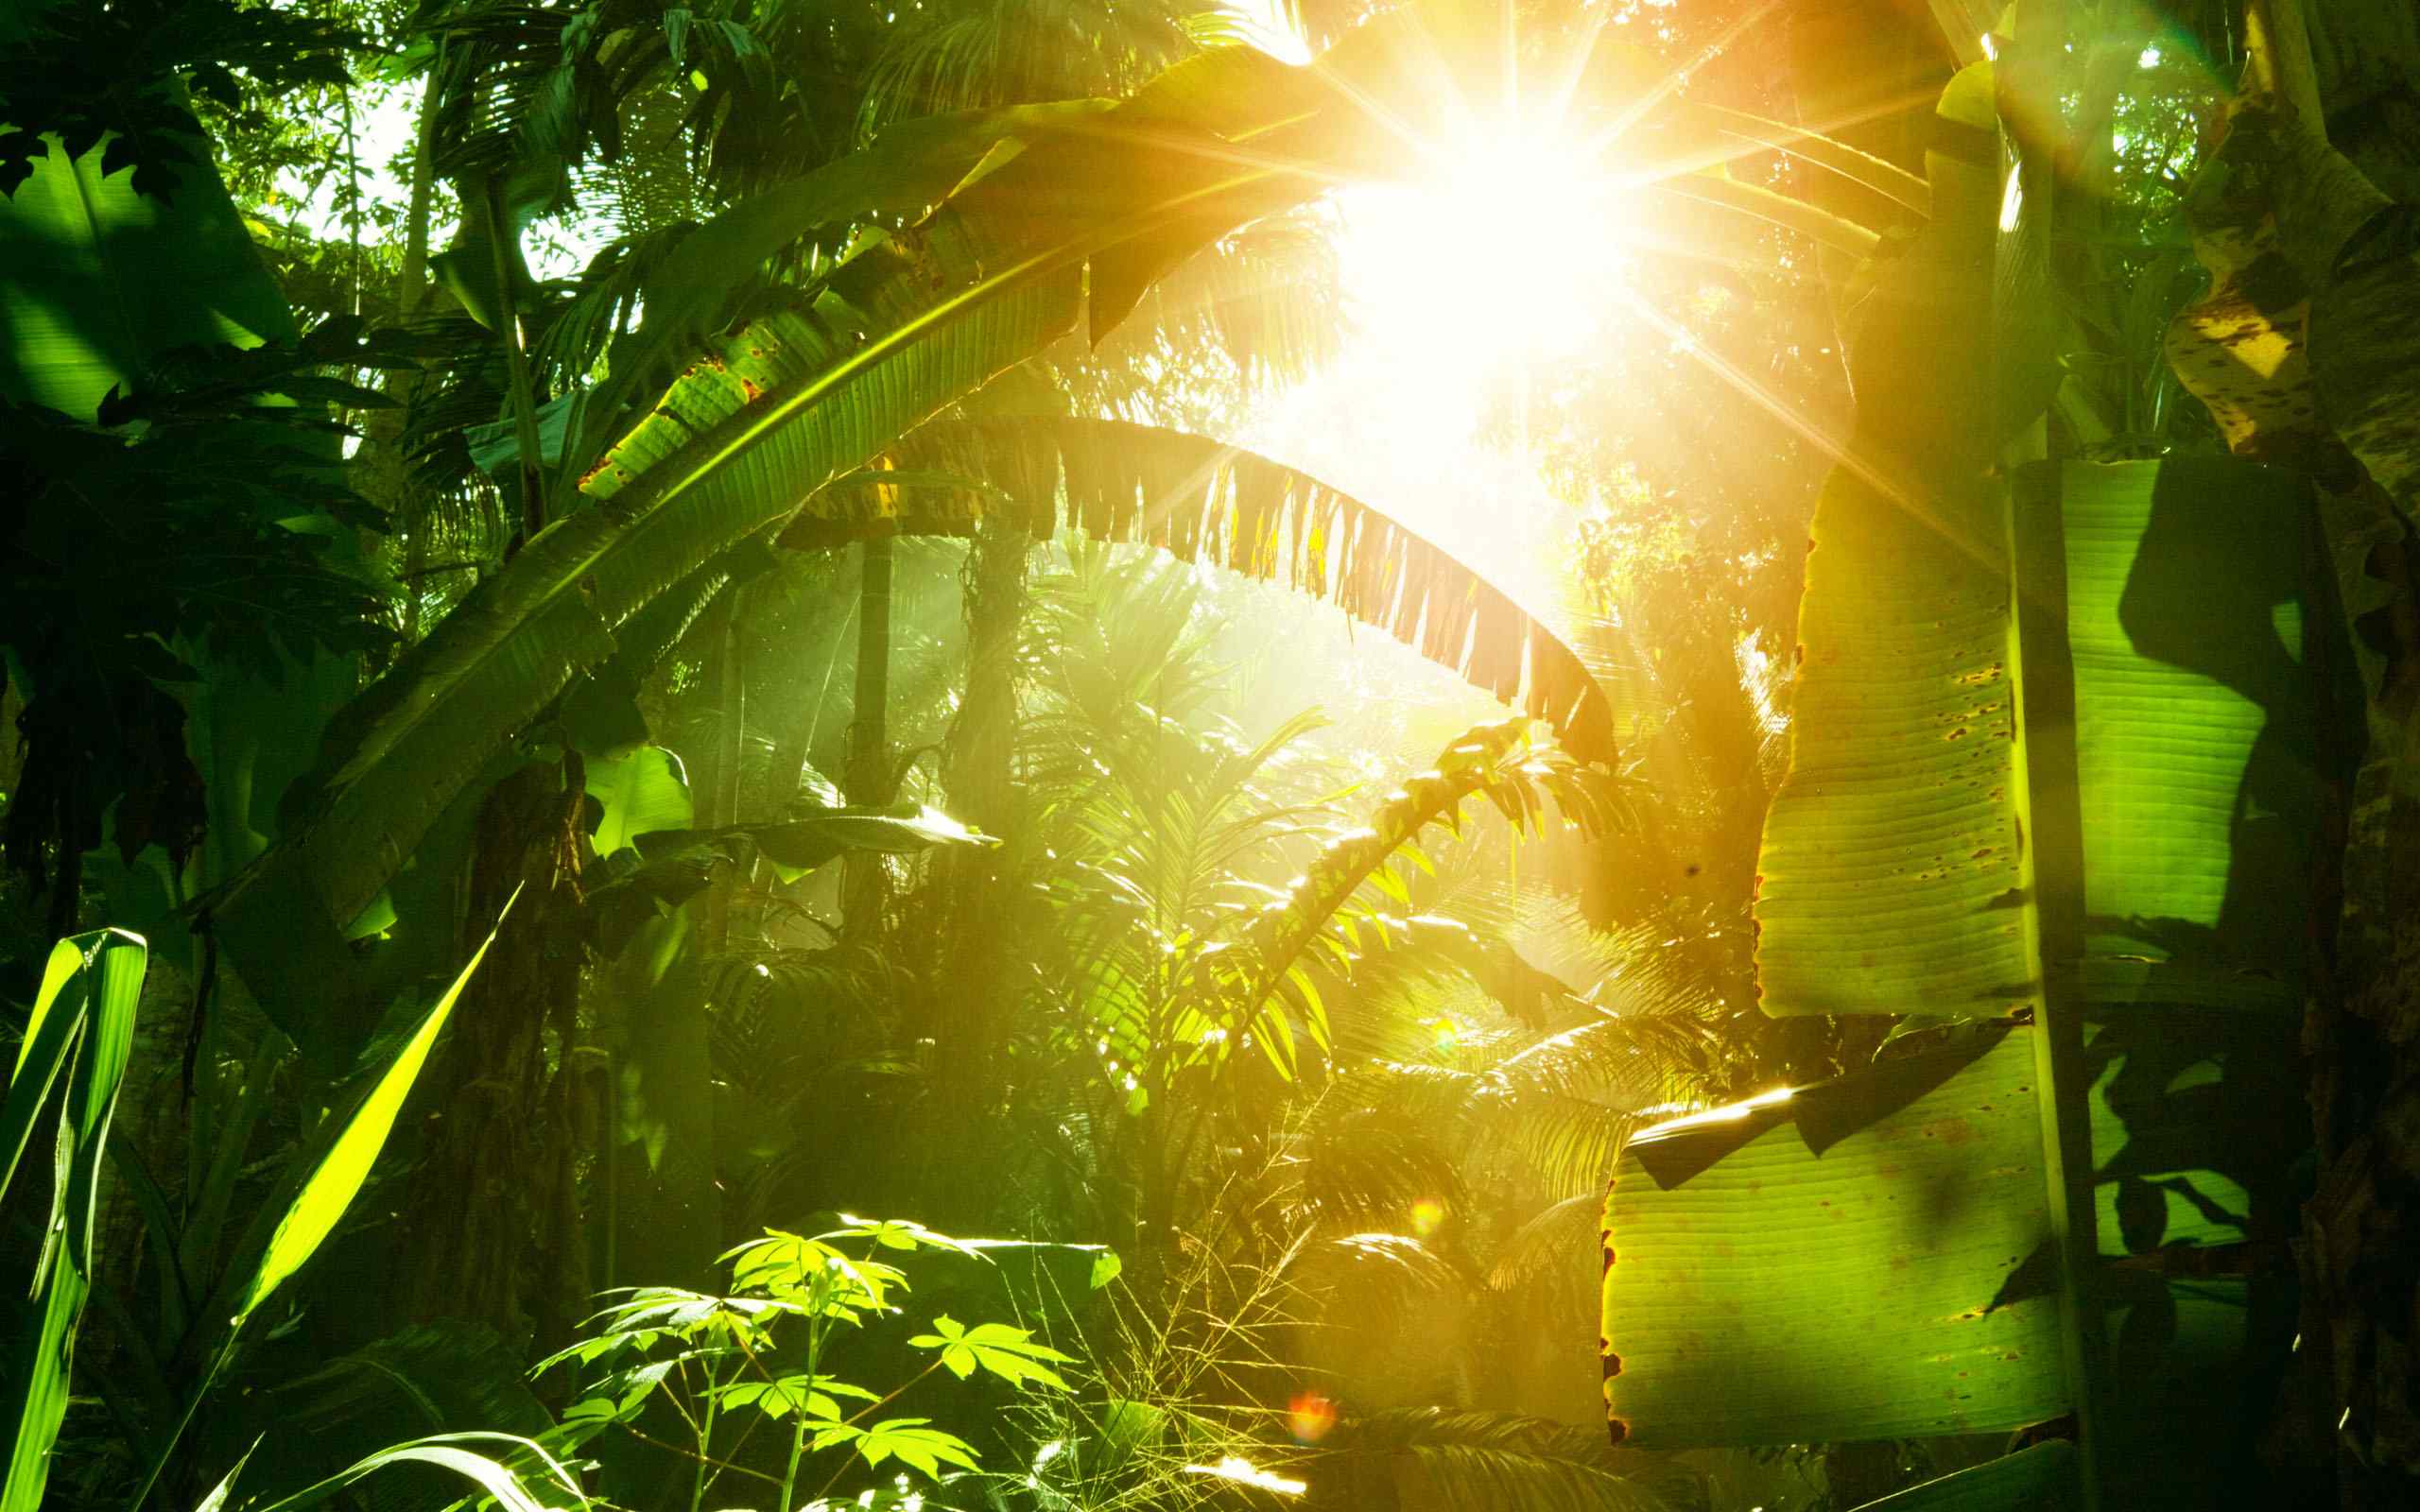 热带雨林绿色植物风景图片桌面壁纸第二辑